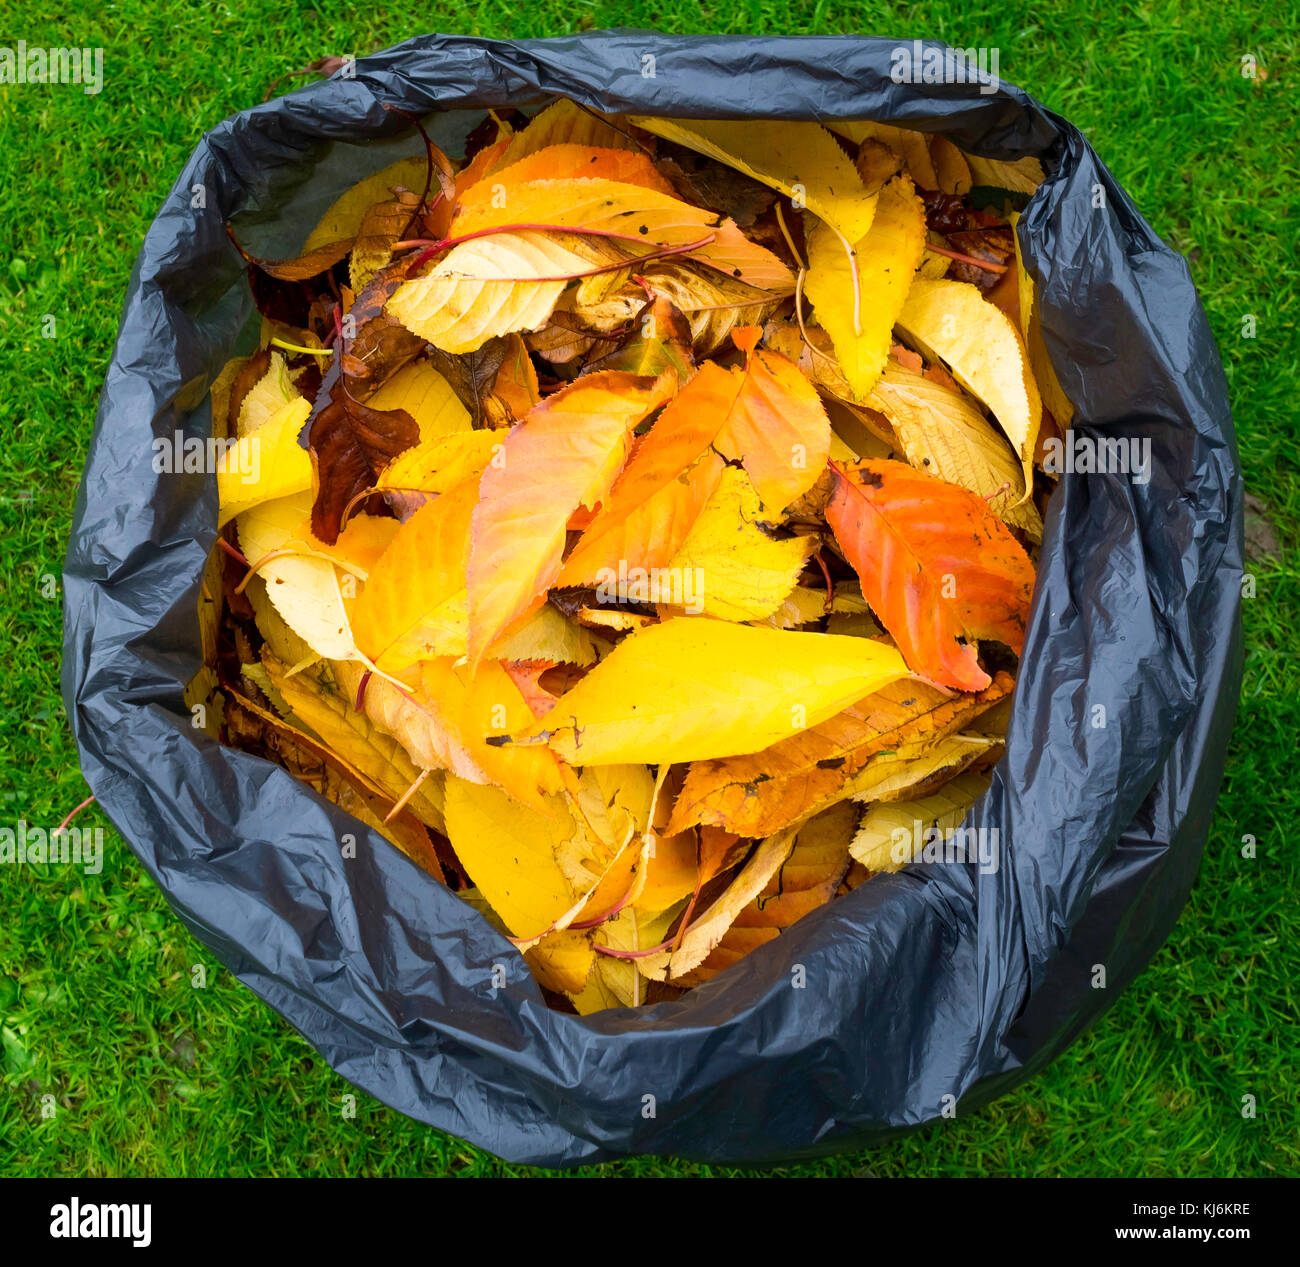 Una bolsa de plástico llena de negros muertos hojas de otoño, que se descomponen en la bolsa formando un molde de hoja útil fertilizante de jardín Foto de stock